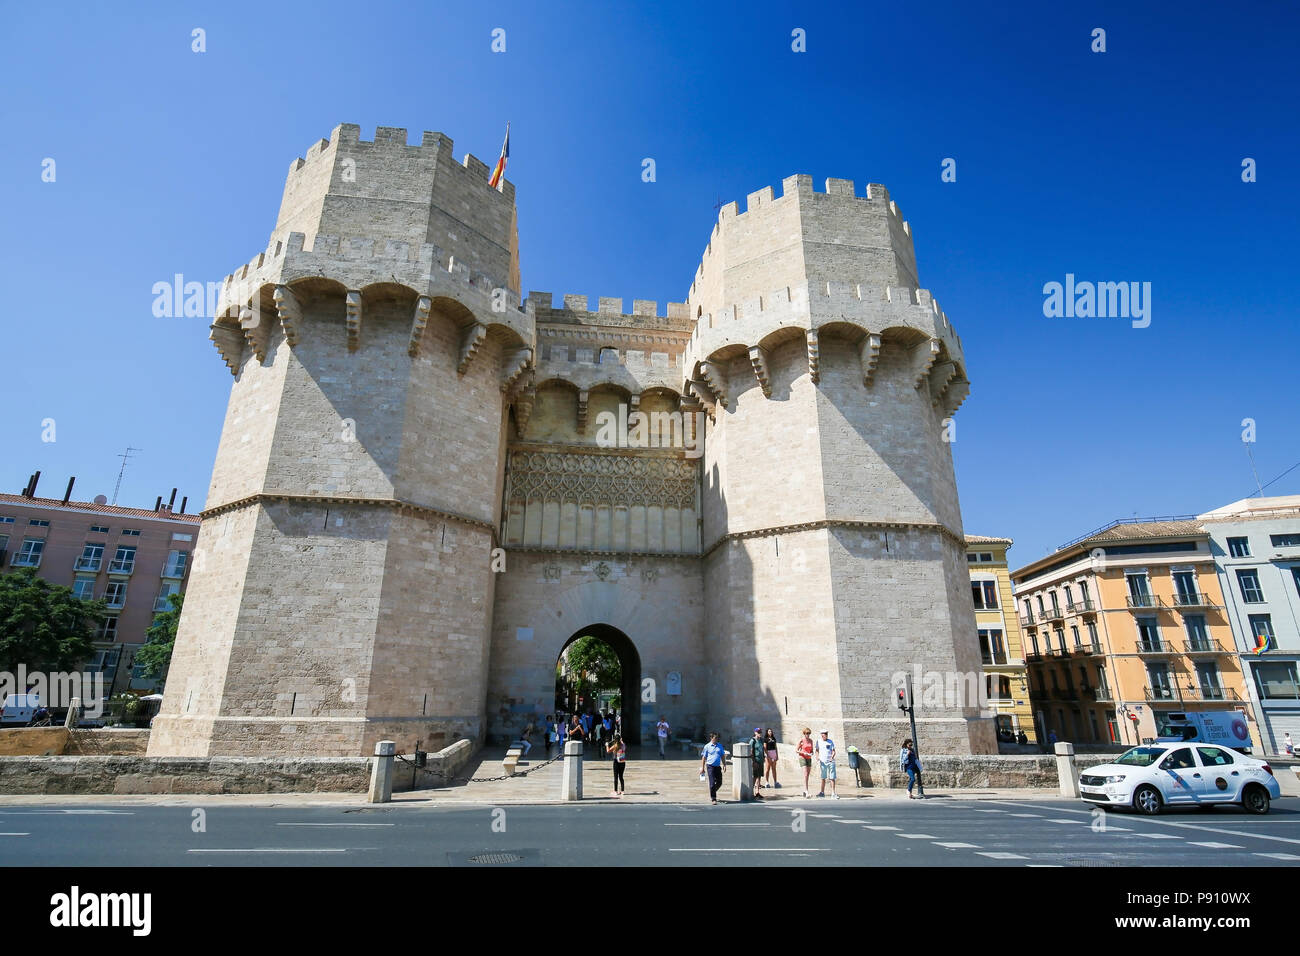 La façade extérieure de la monumentale porte de Serrano ou chambres Gate, construit au 14ème siècle, dans le centre de Valence, Espagne Banque D'Images